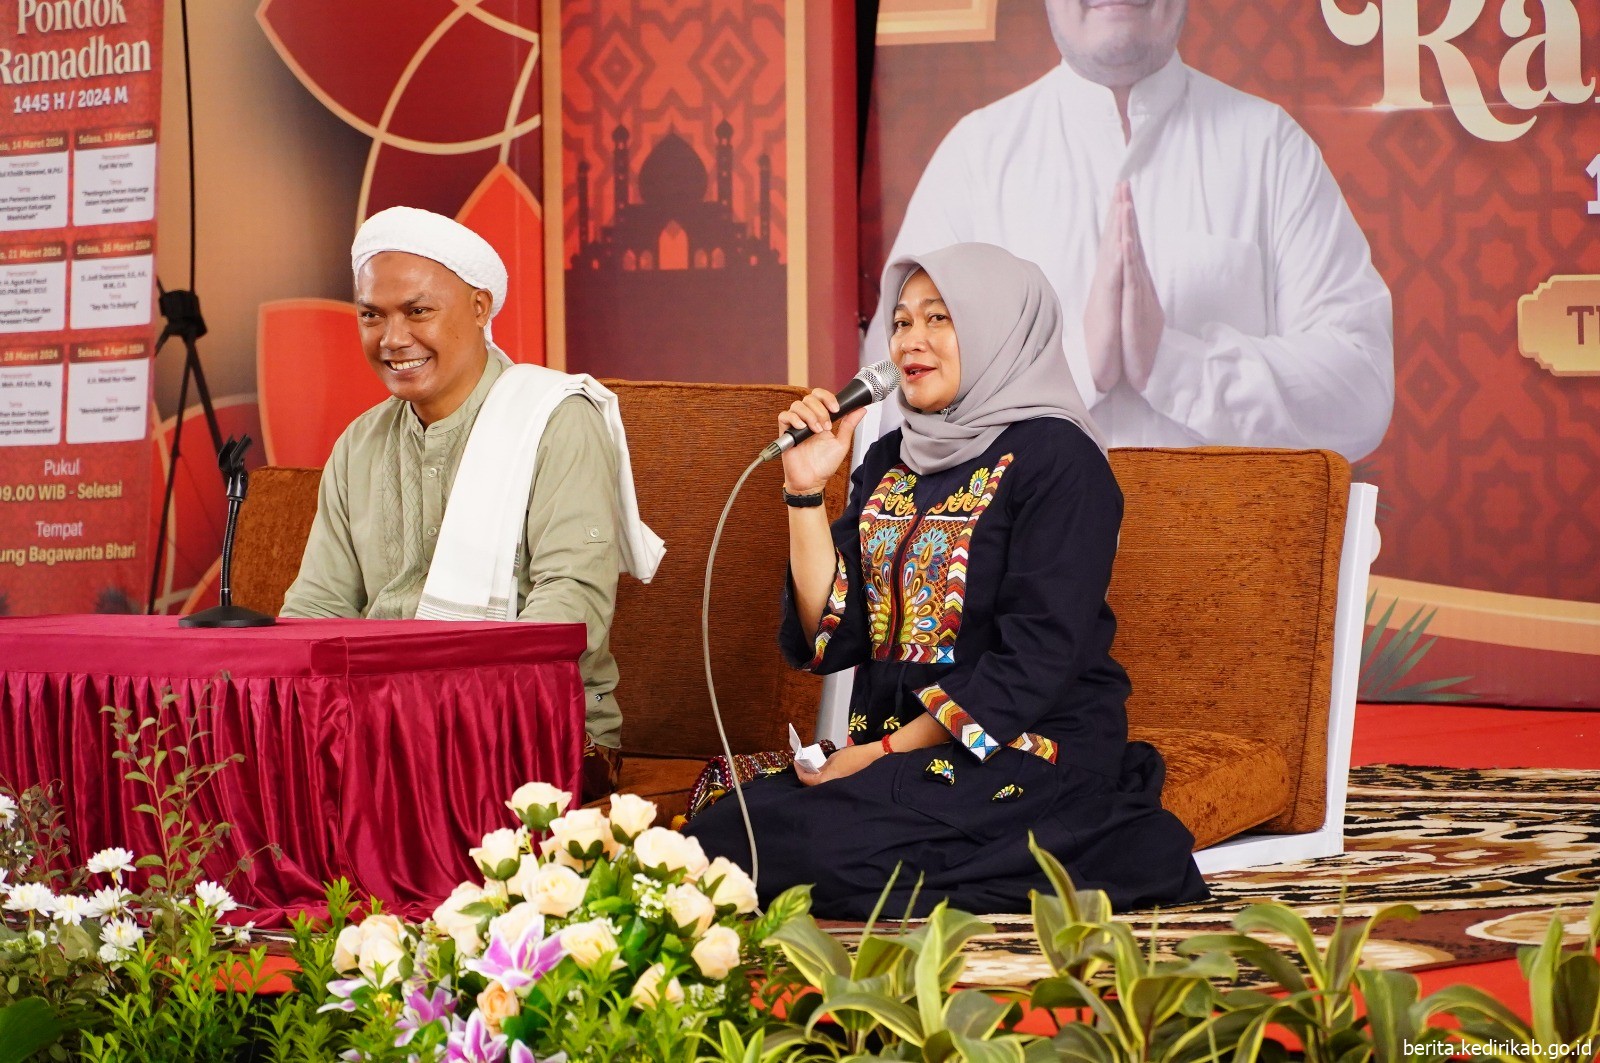 Pondok Ramadhan Terakhir, Menambah Ilmu yang Bermanfaat